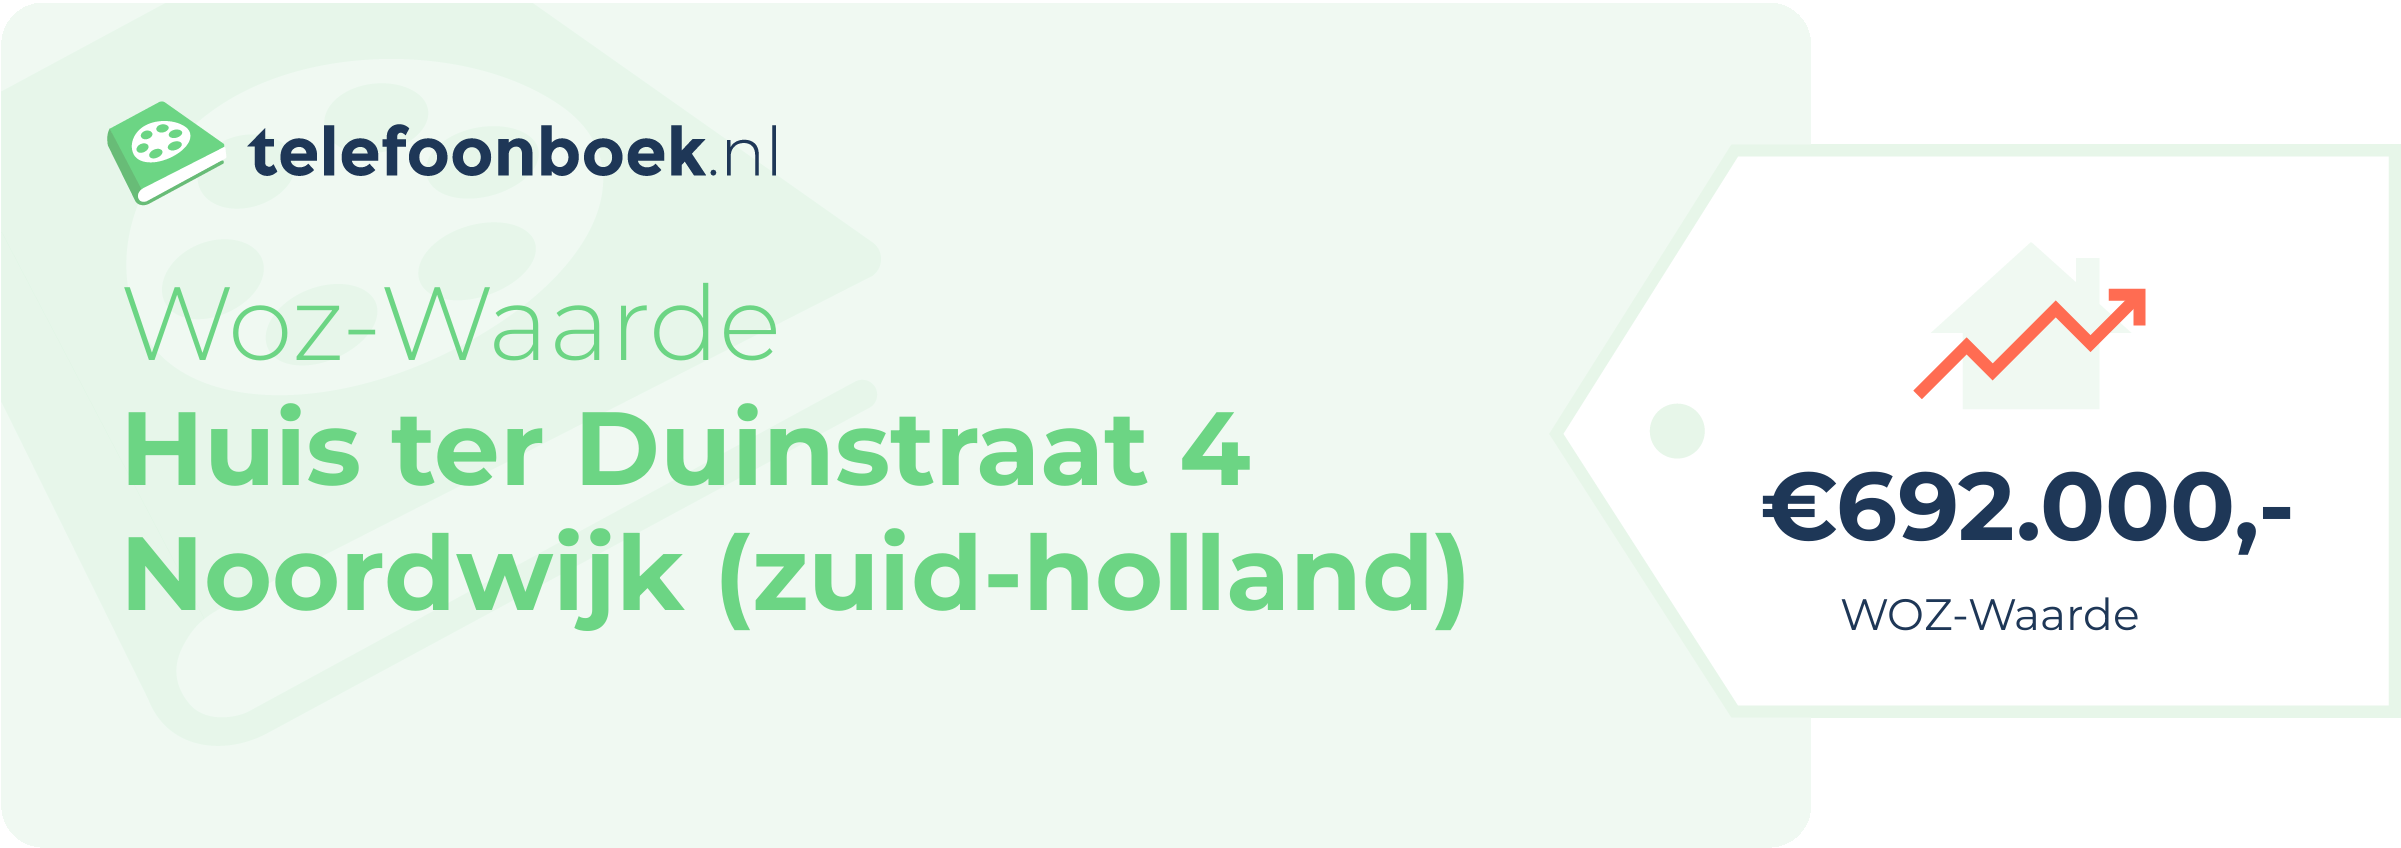 WOZ-waarde Huis Ter Duinstraat 4 Noordwijk (Zuid-Holland)